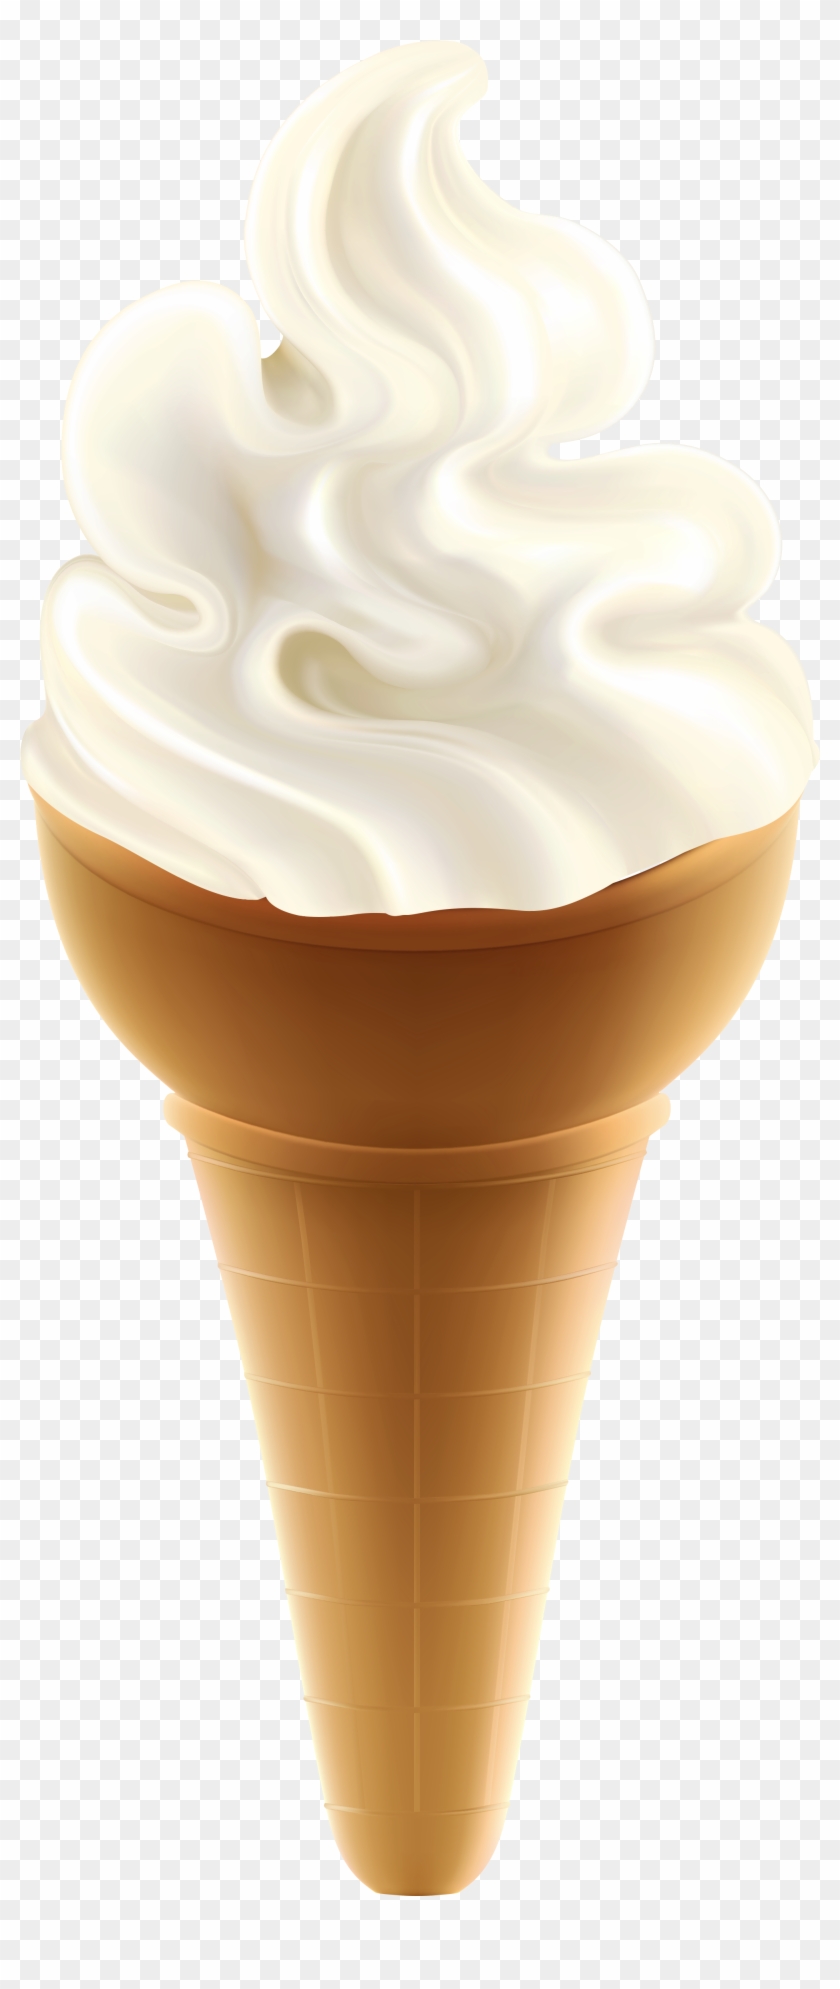 Ice Cream Cone Transparent Background Clipart #460256